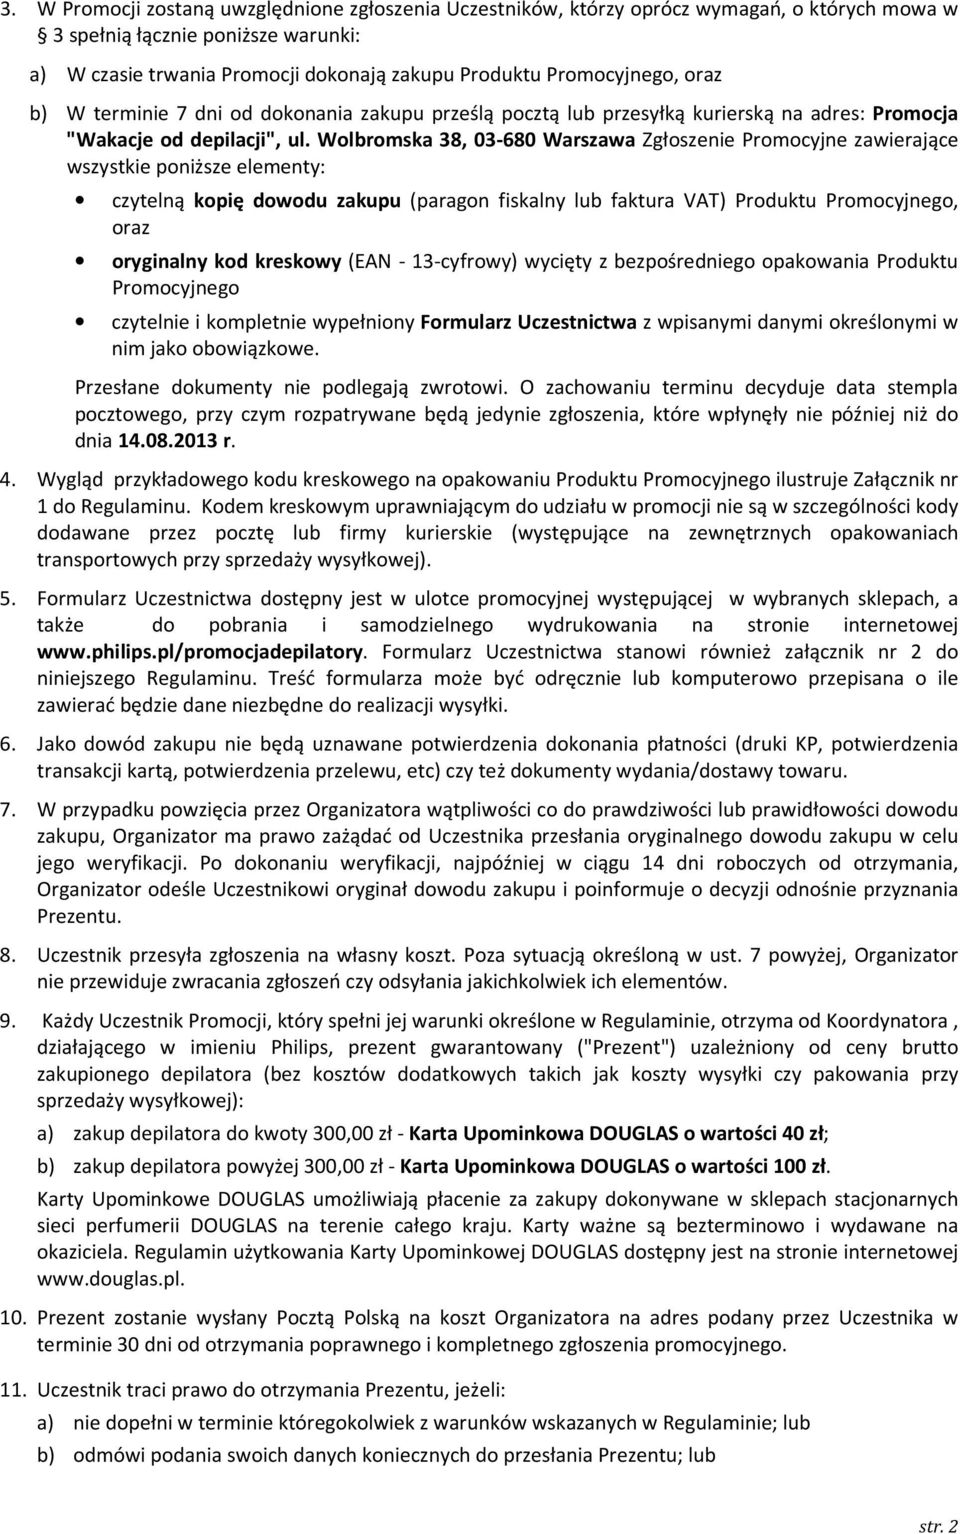 Wolbromska 38, 03-680 Warszawa Zgłoszenie Promocyjne zawierające wszystkie poniższe elementy: czytelną kopię dowodu zakupu (paragon fiskalny lub faktura VAT) Produktu Promocyjnego, oraz oryginalny